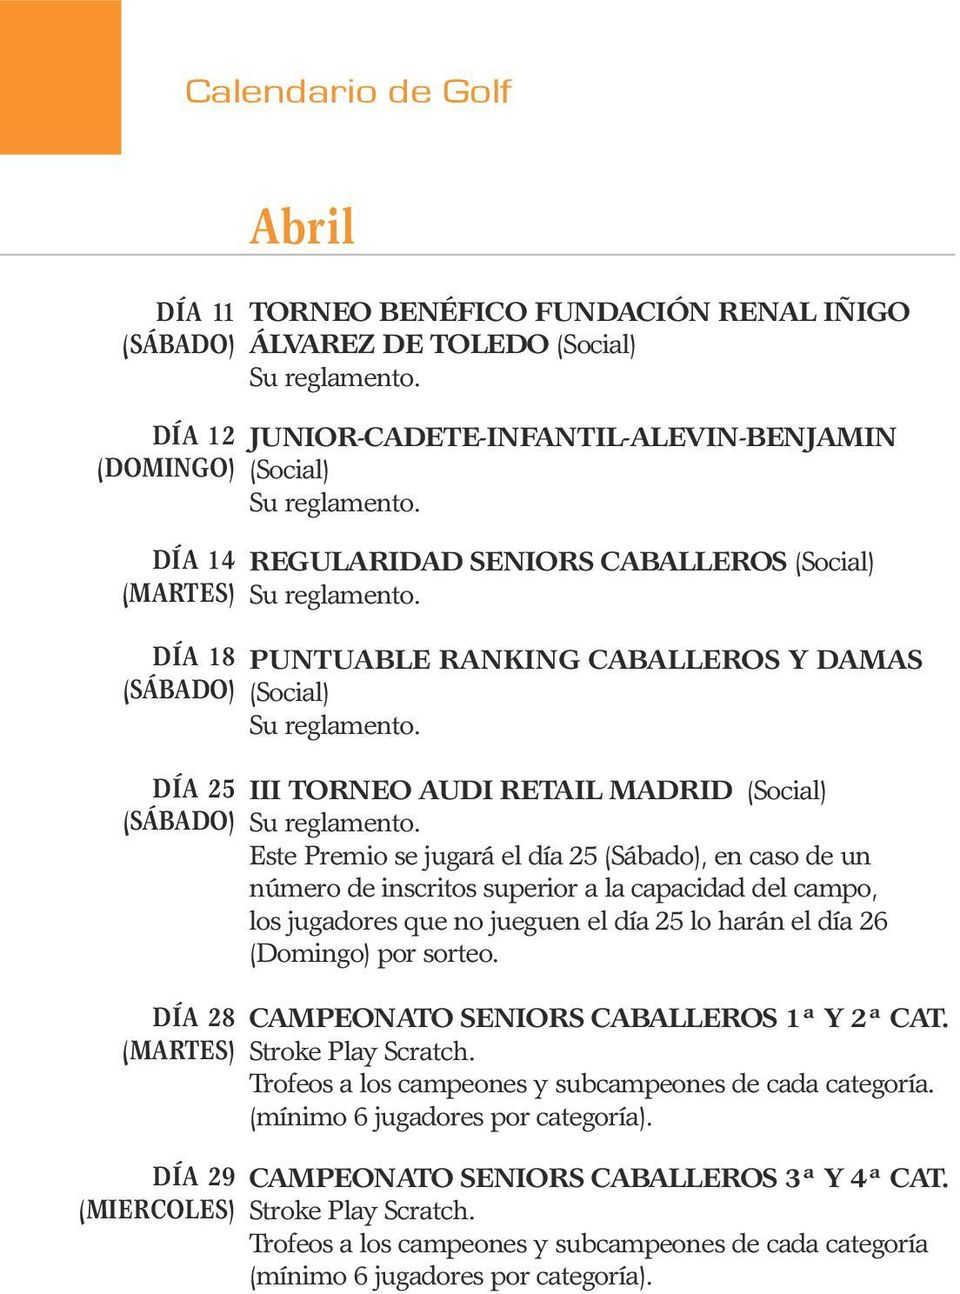 DÍA 25 III TORNEO AUDI RETAIL MADRID (Social) (SÁBADO) Su reglamento.